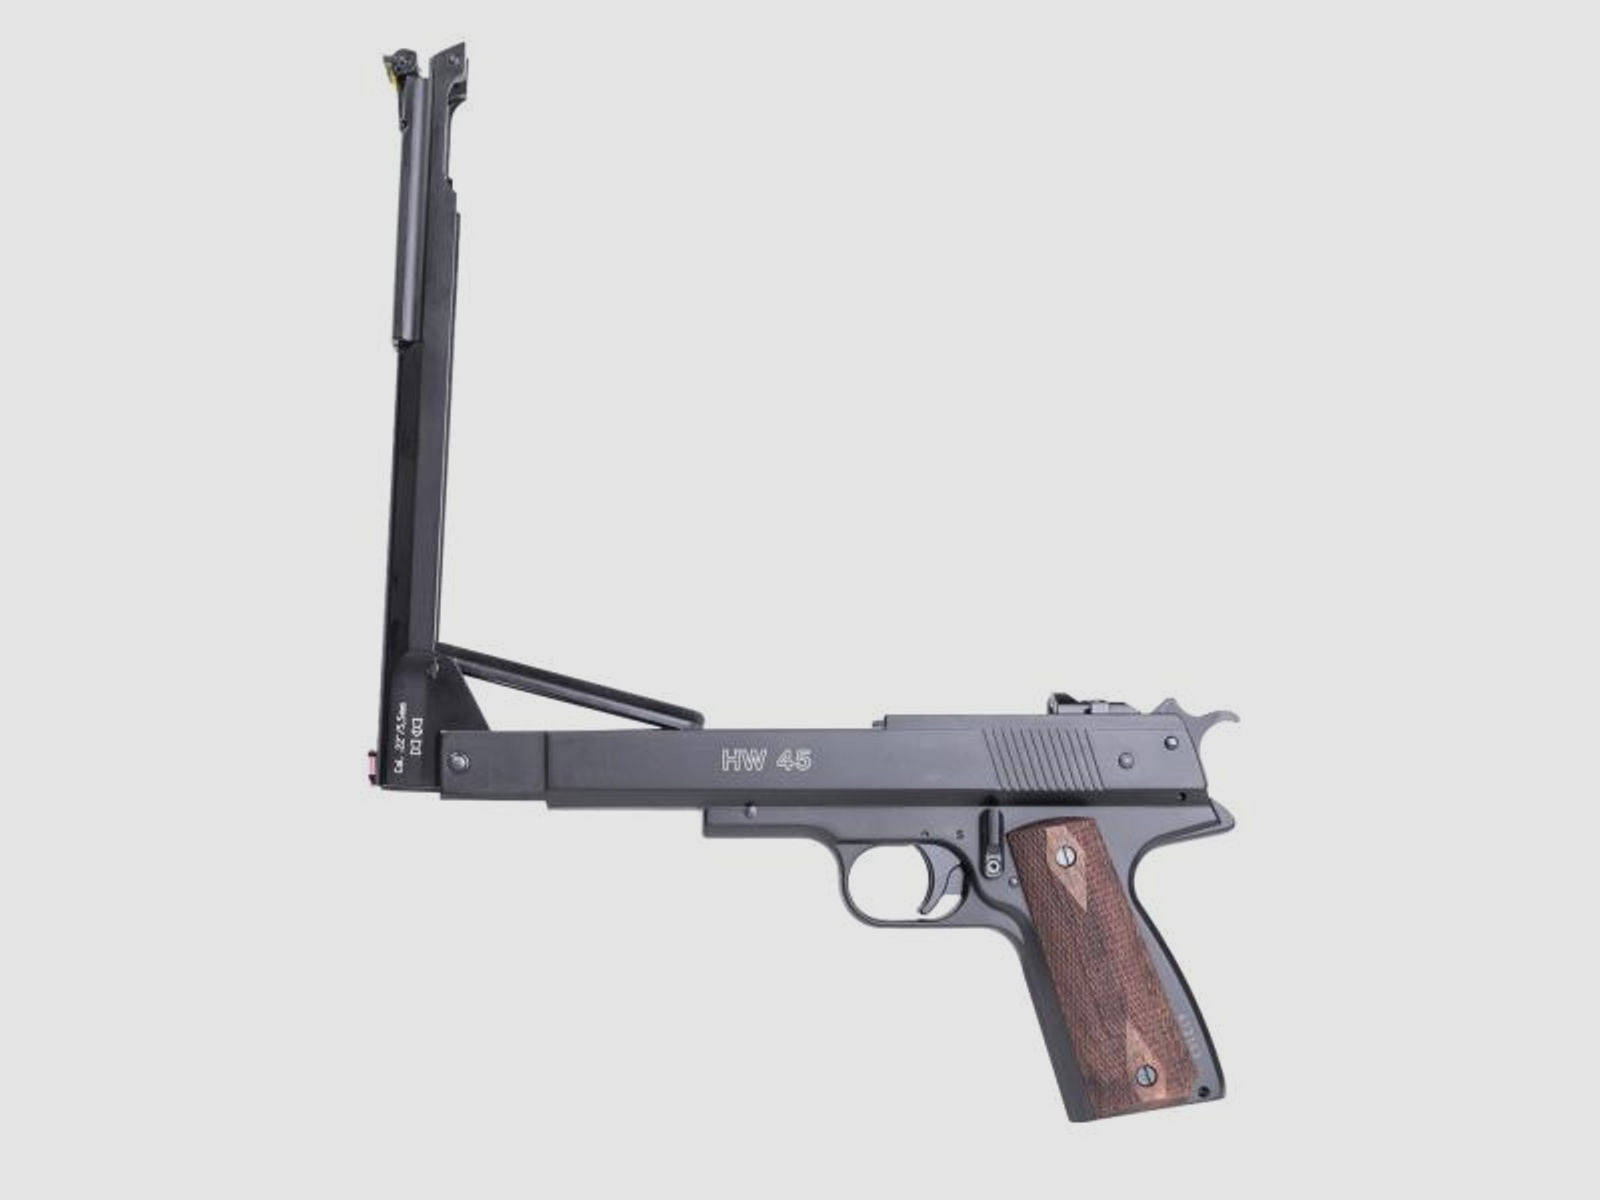 WEIHRAUCH Druckluftwaffe Pistole HW45 Kal. 4,5mm